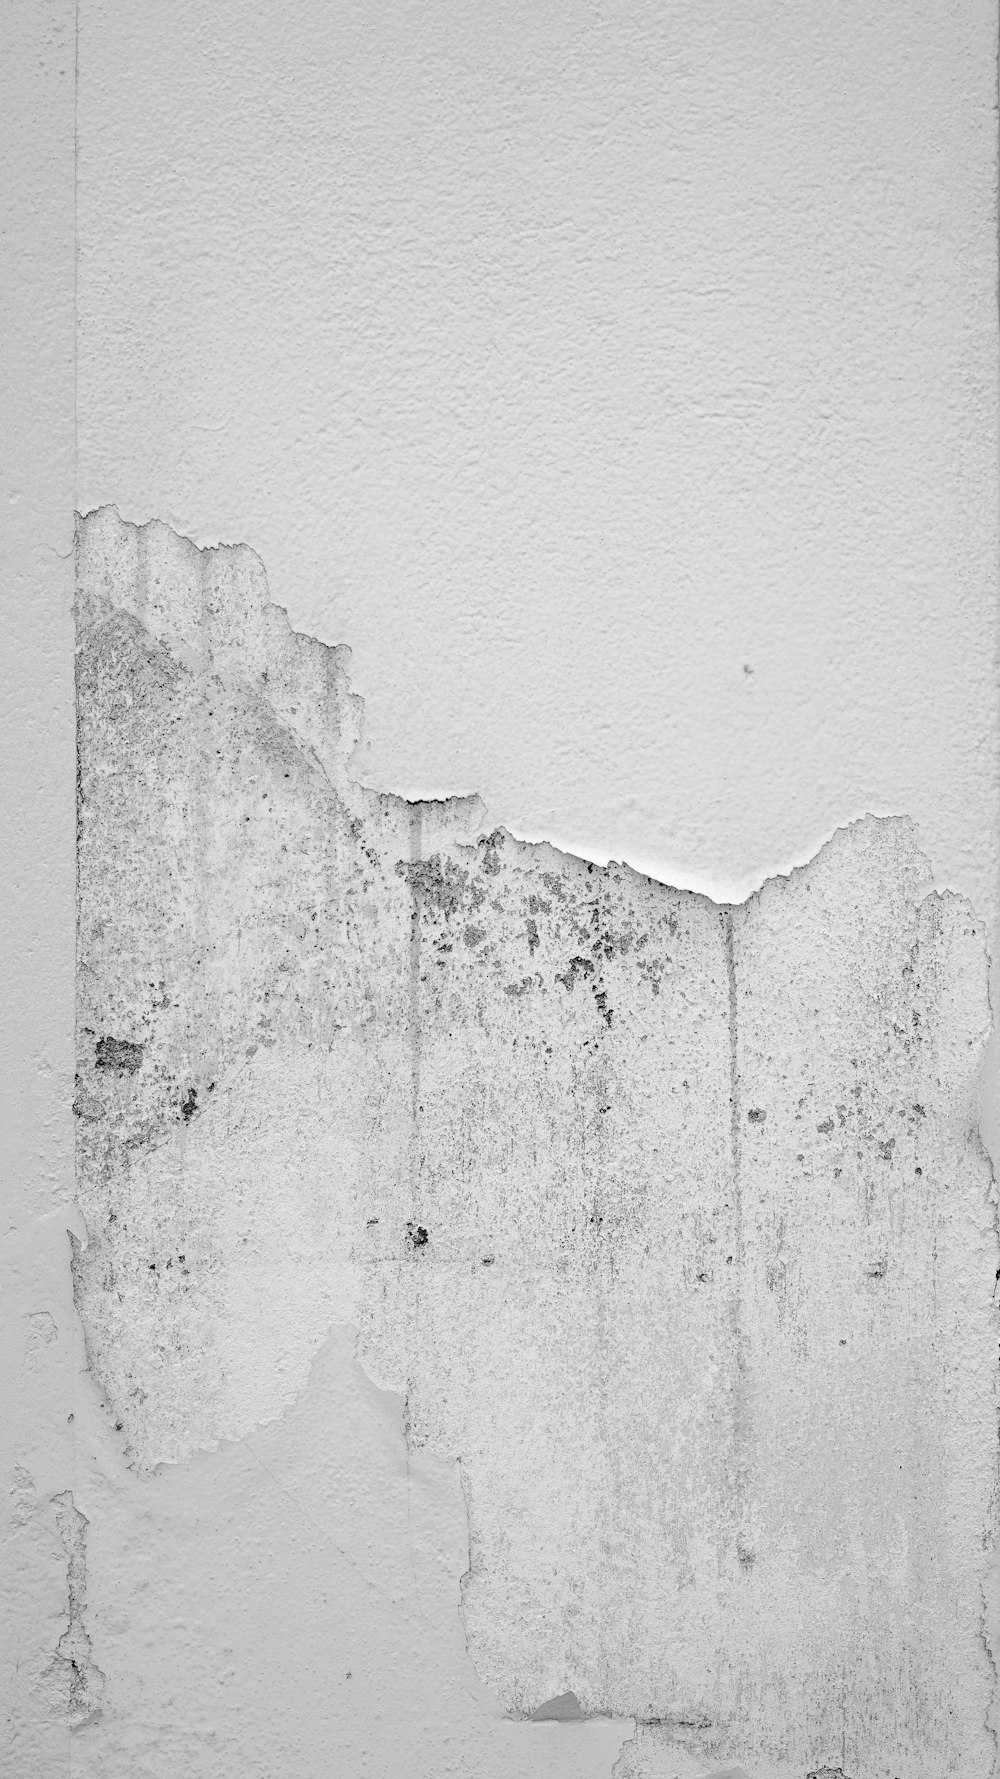 Textura única De Superficie De Corcho Blanco Suave Imagen de archivo -  Imagen de blanco, superficie: 232160139